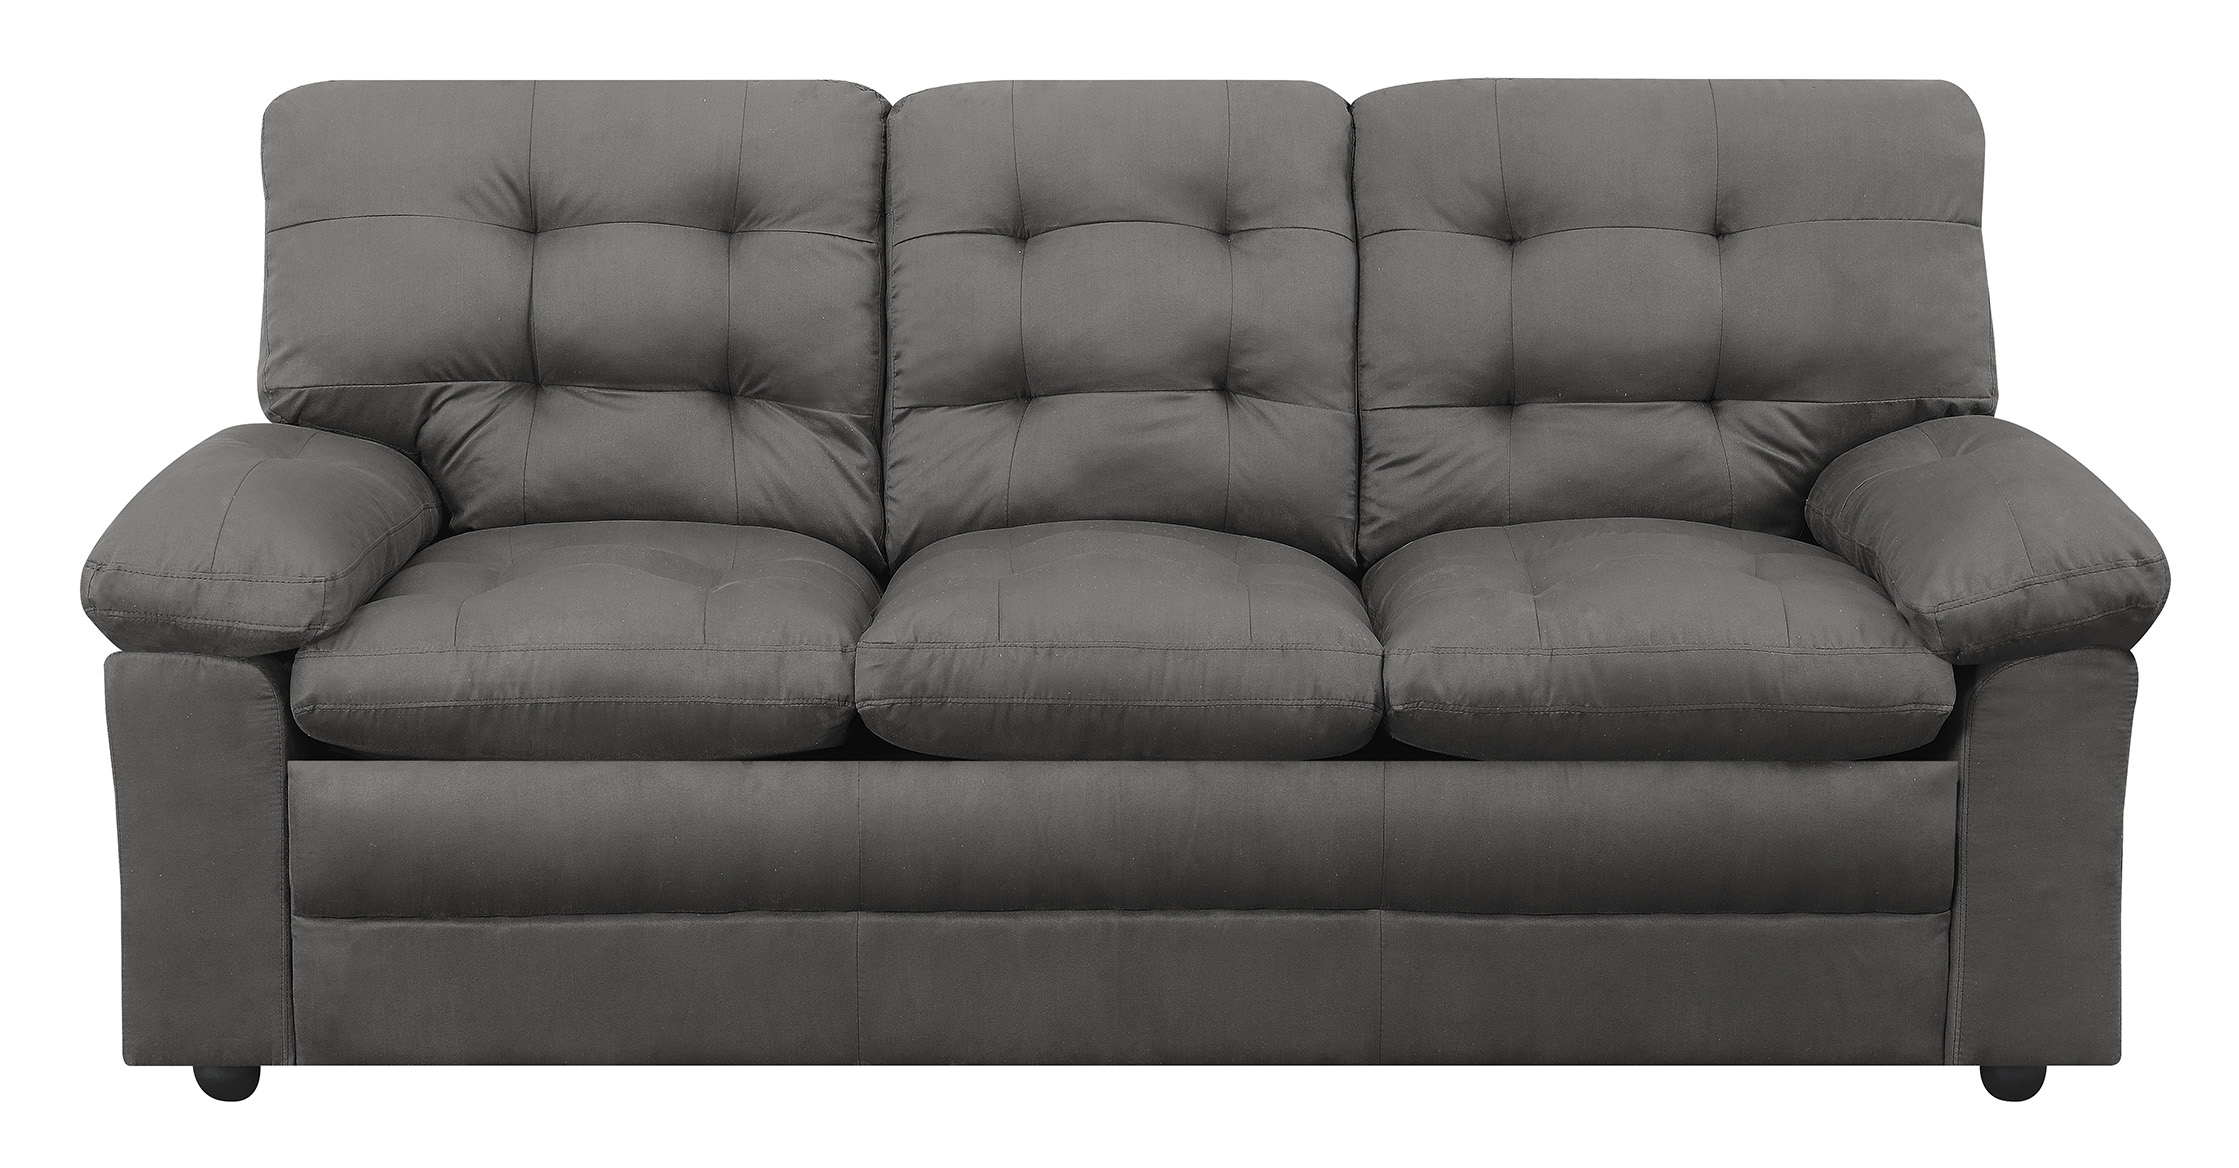 Buchannan microfiber sofa for $175